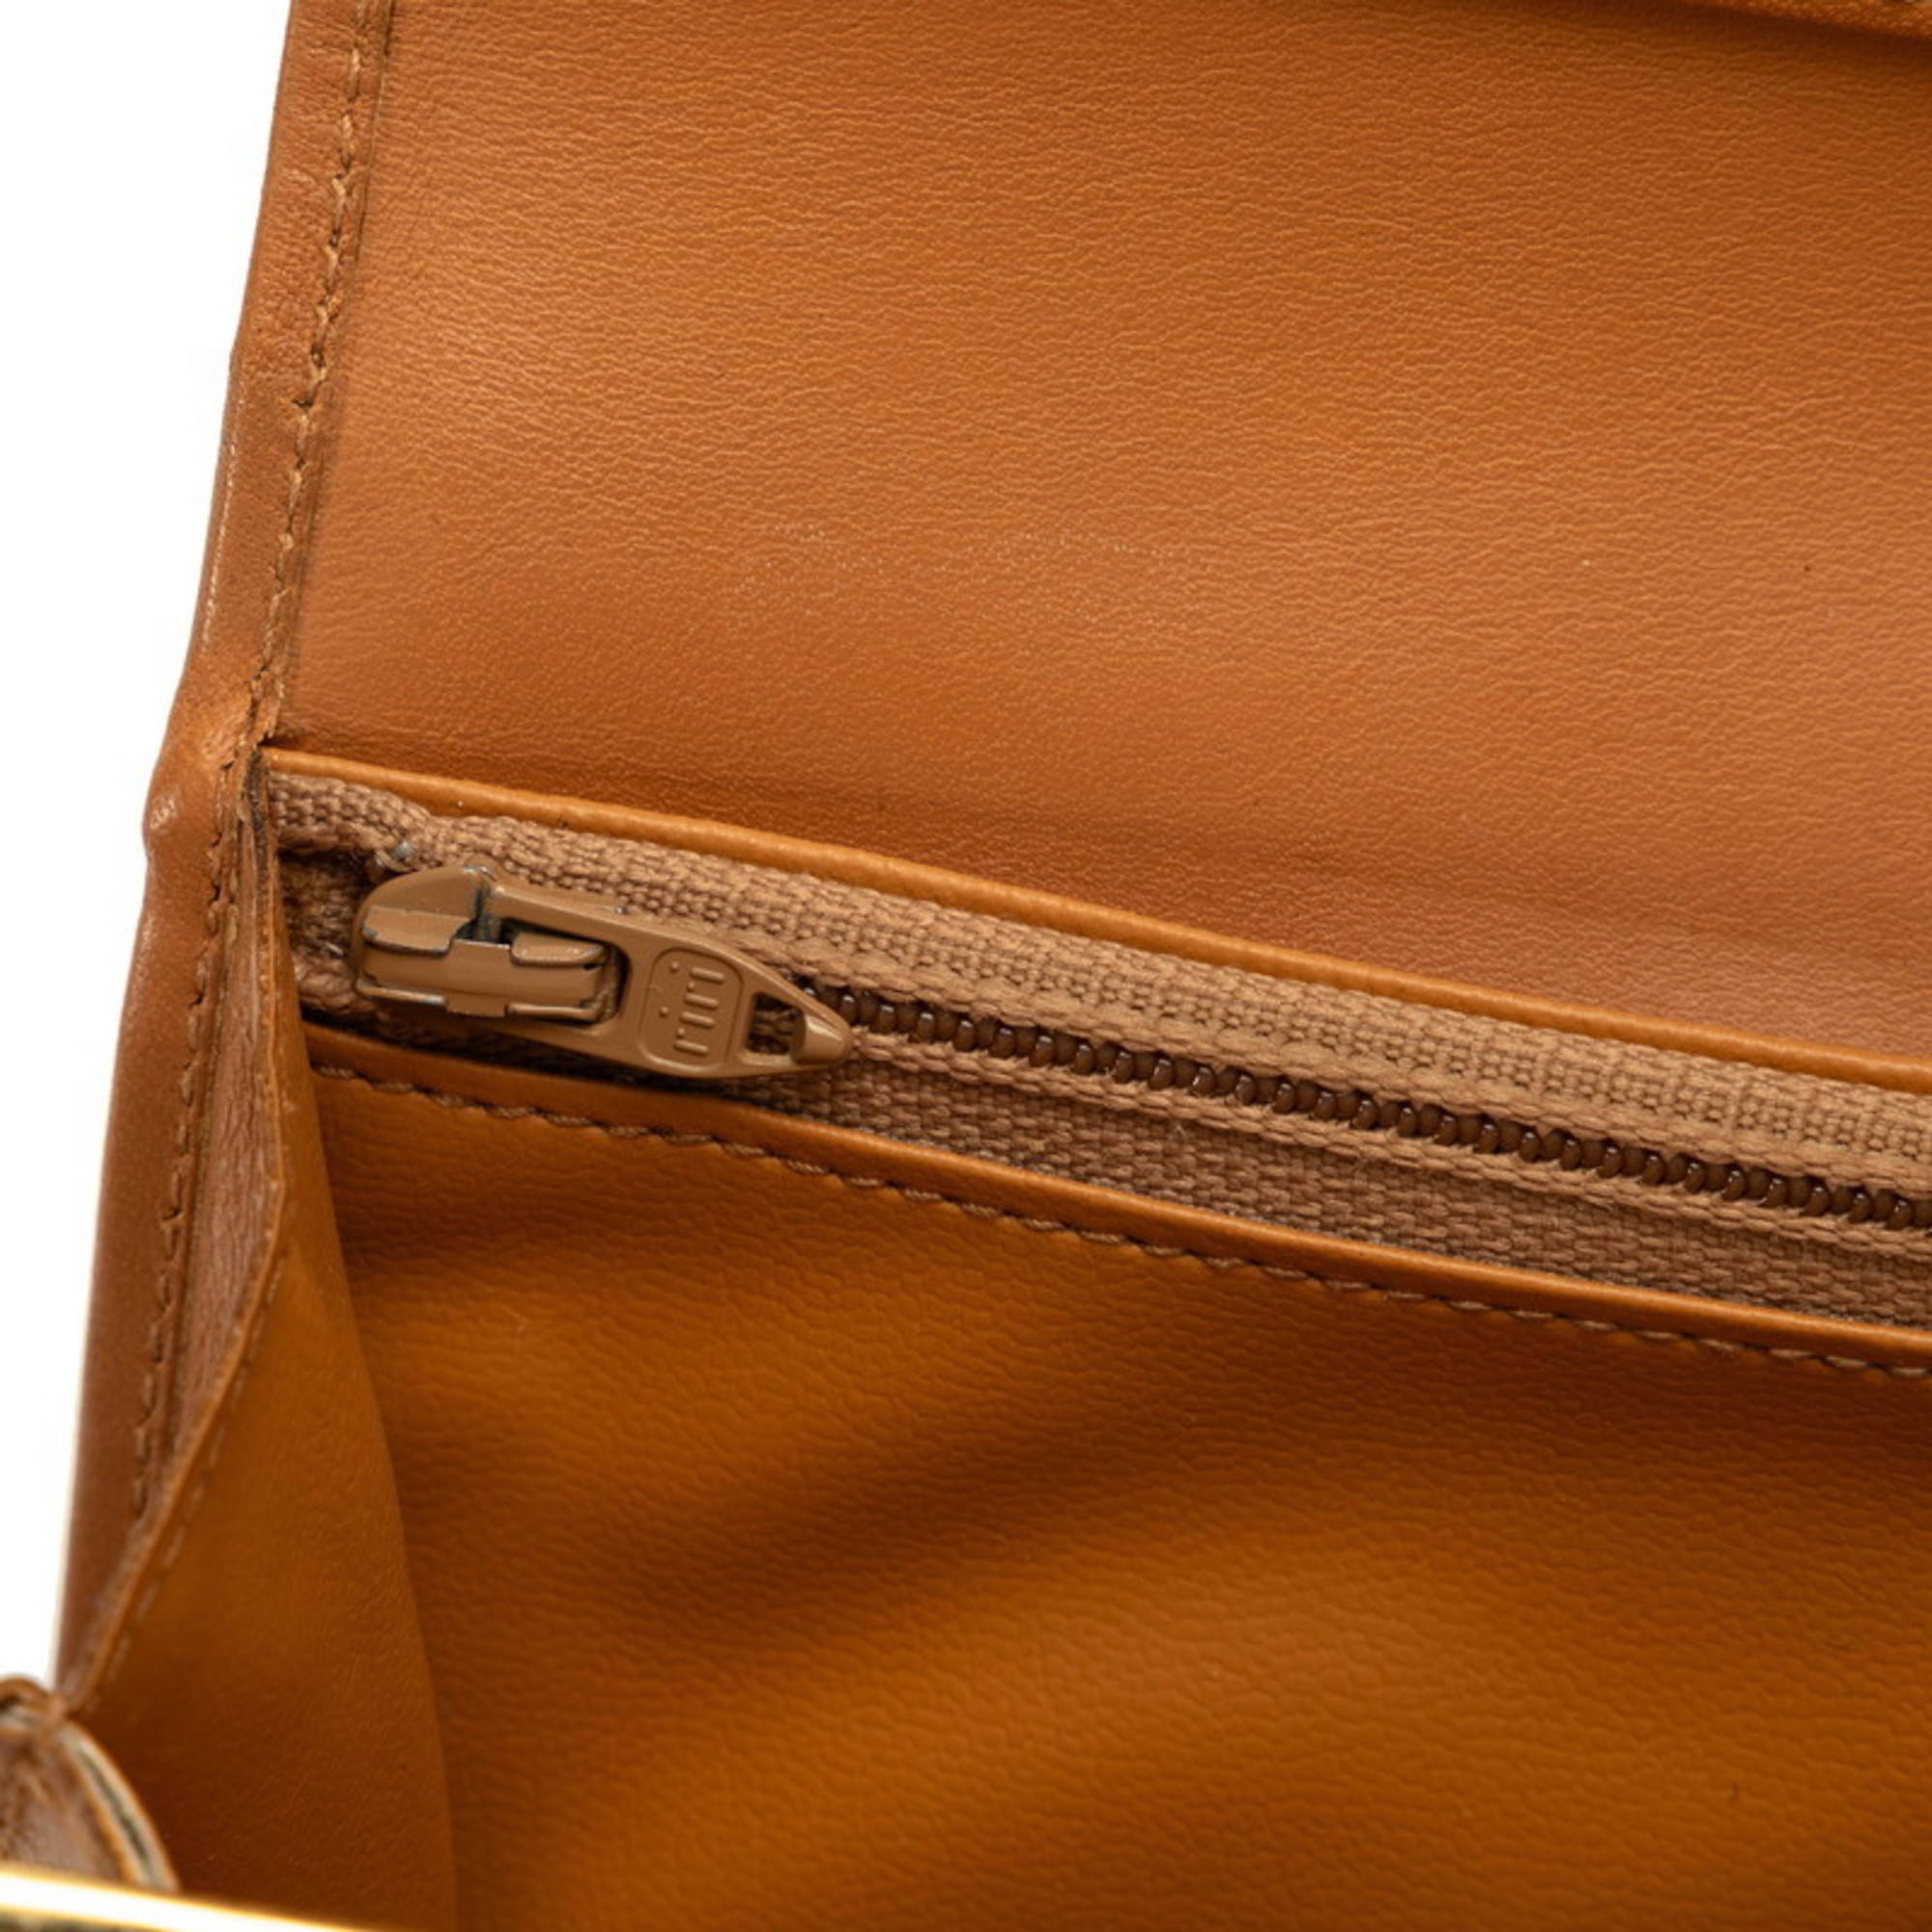 Celine Macadam Long Wallet Beige Brown PVC Leather Women's CELINE